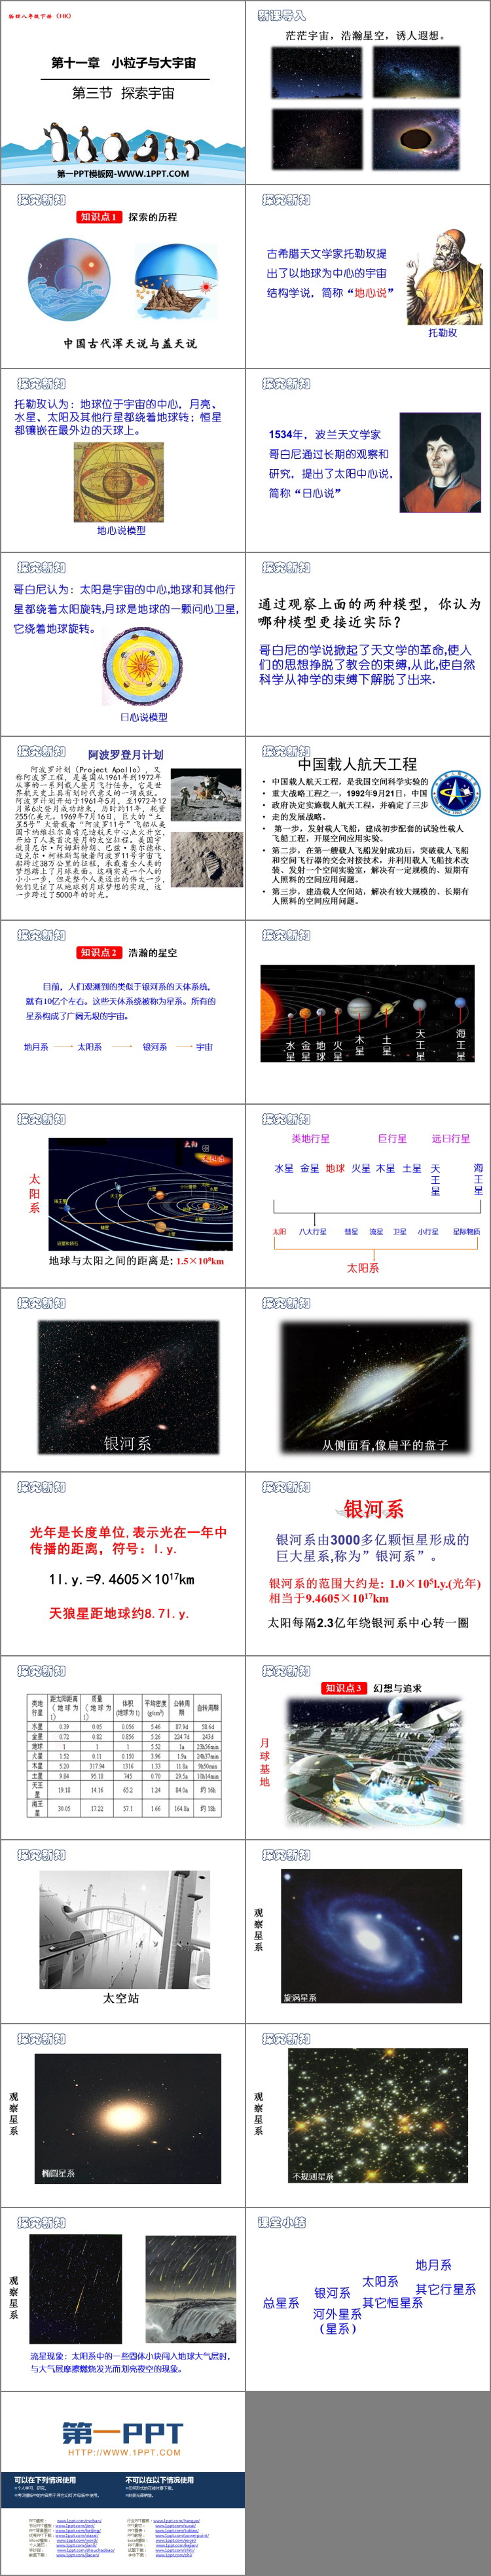 《探索宇宙》小粒子与大宇宙PPT教学课件-预览图02